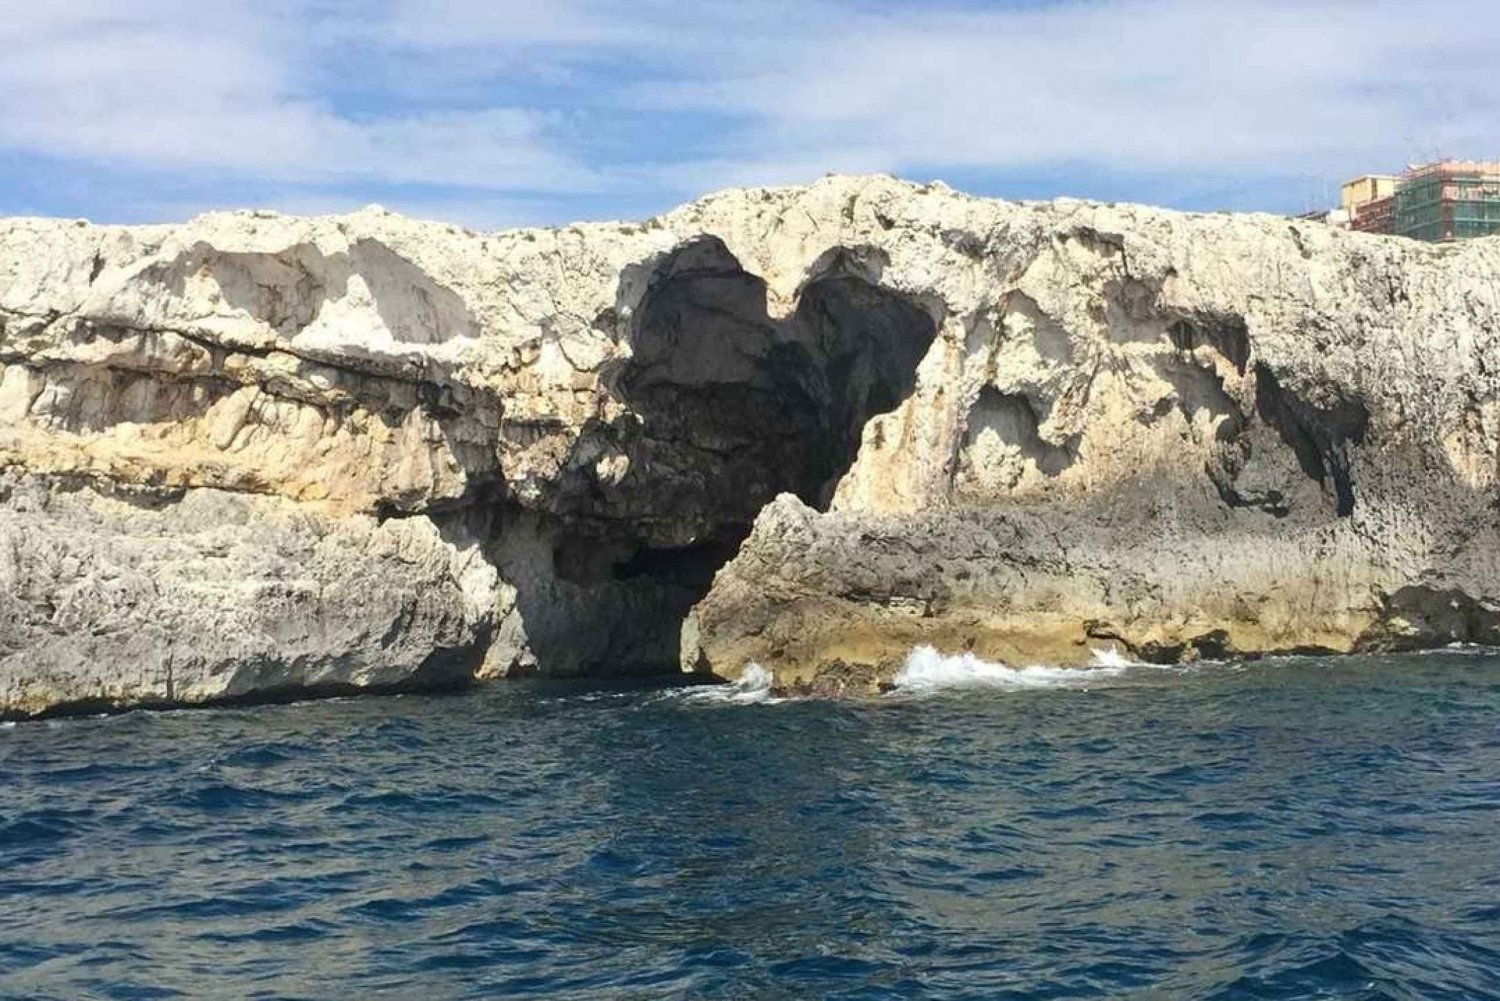 Syrakus: Bootstour zur Insel Ortygia mit Meereshöhlen-Besuch